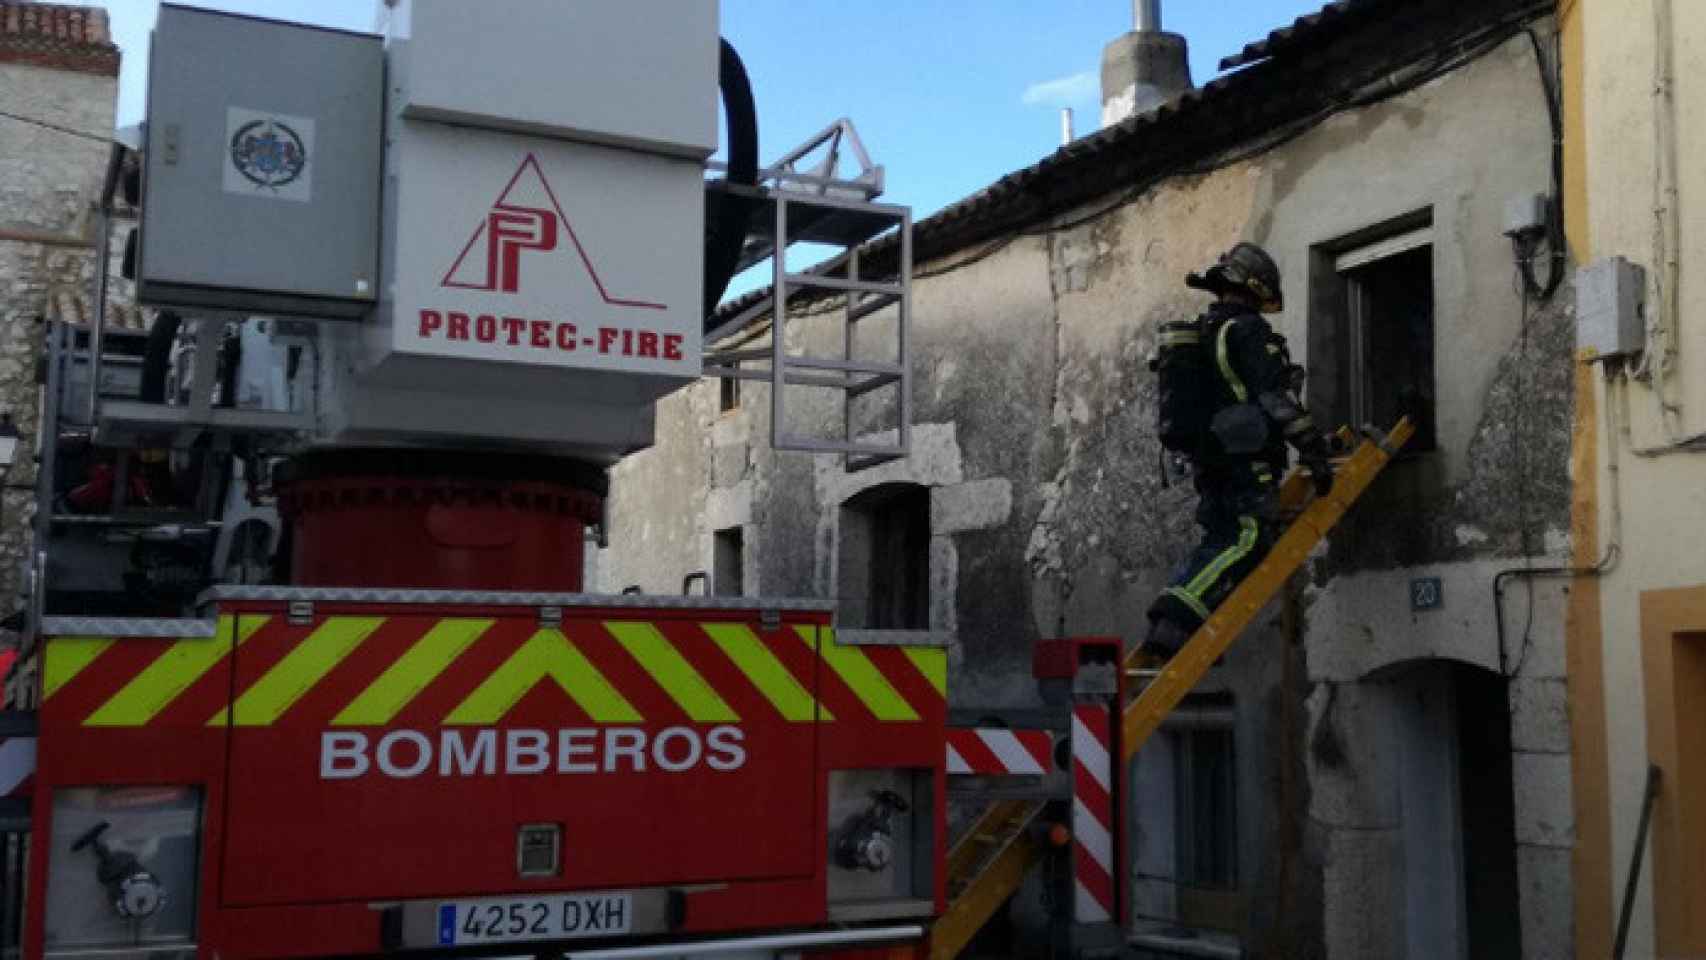 Valladolid-canalejas-penafiel-incendio-fuego